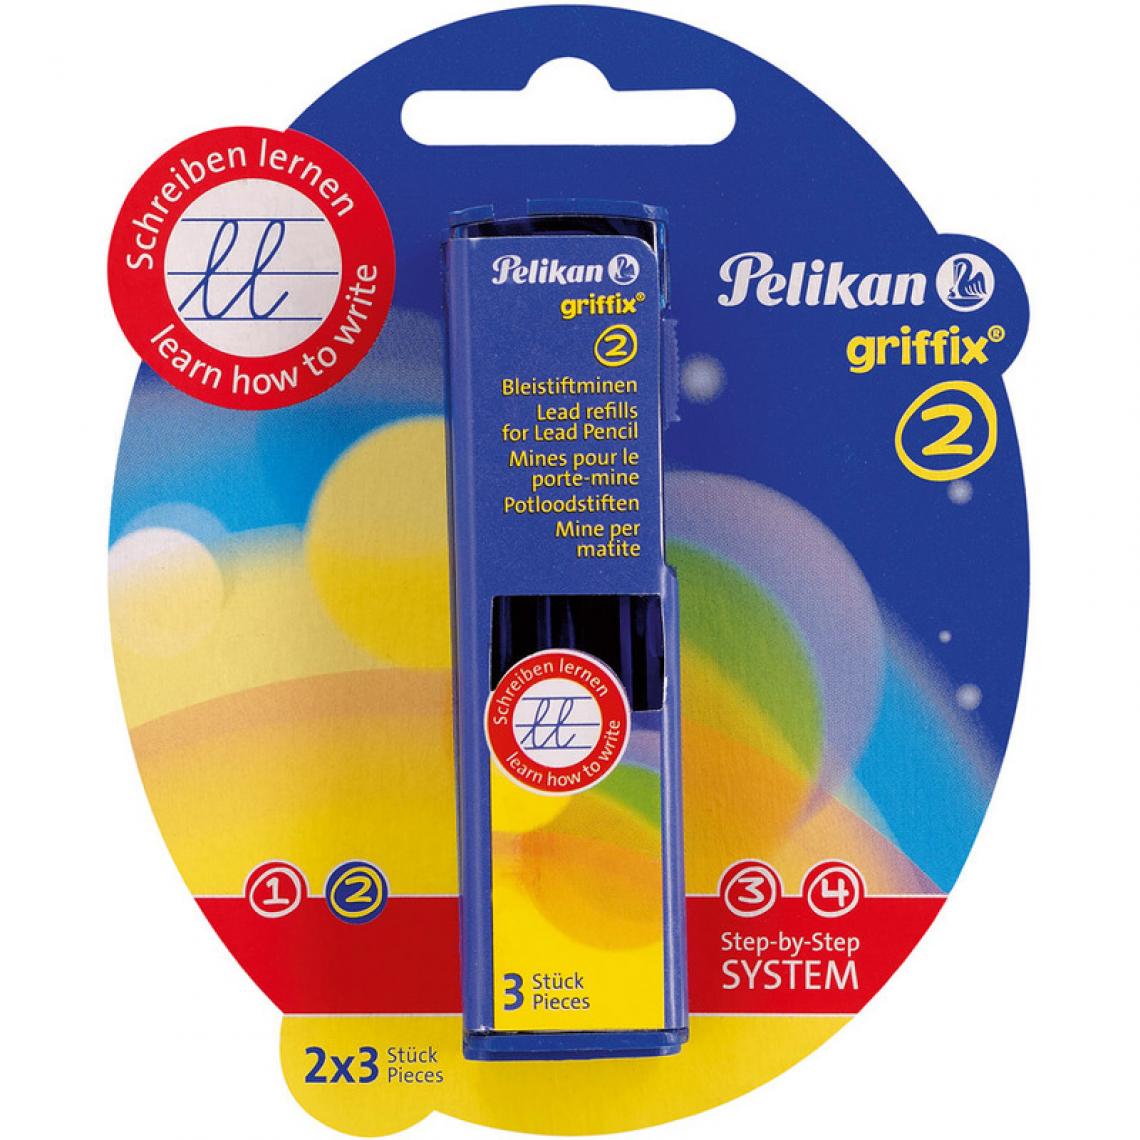 Pelikan - Pelikan griffix Mines pour porte-mines, emballage blister () - Outils et accessoires du peintre